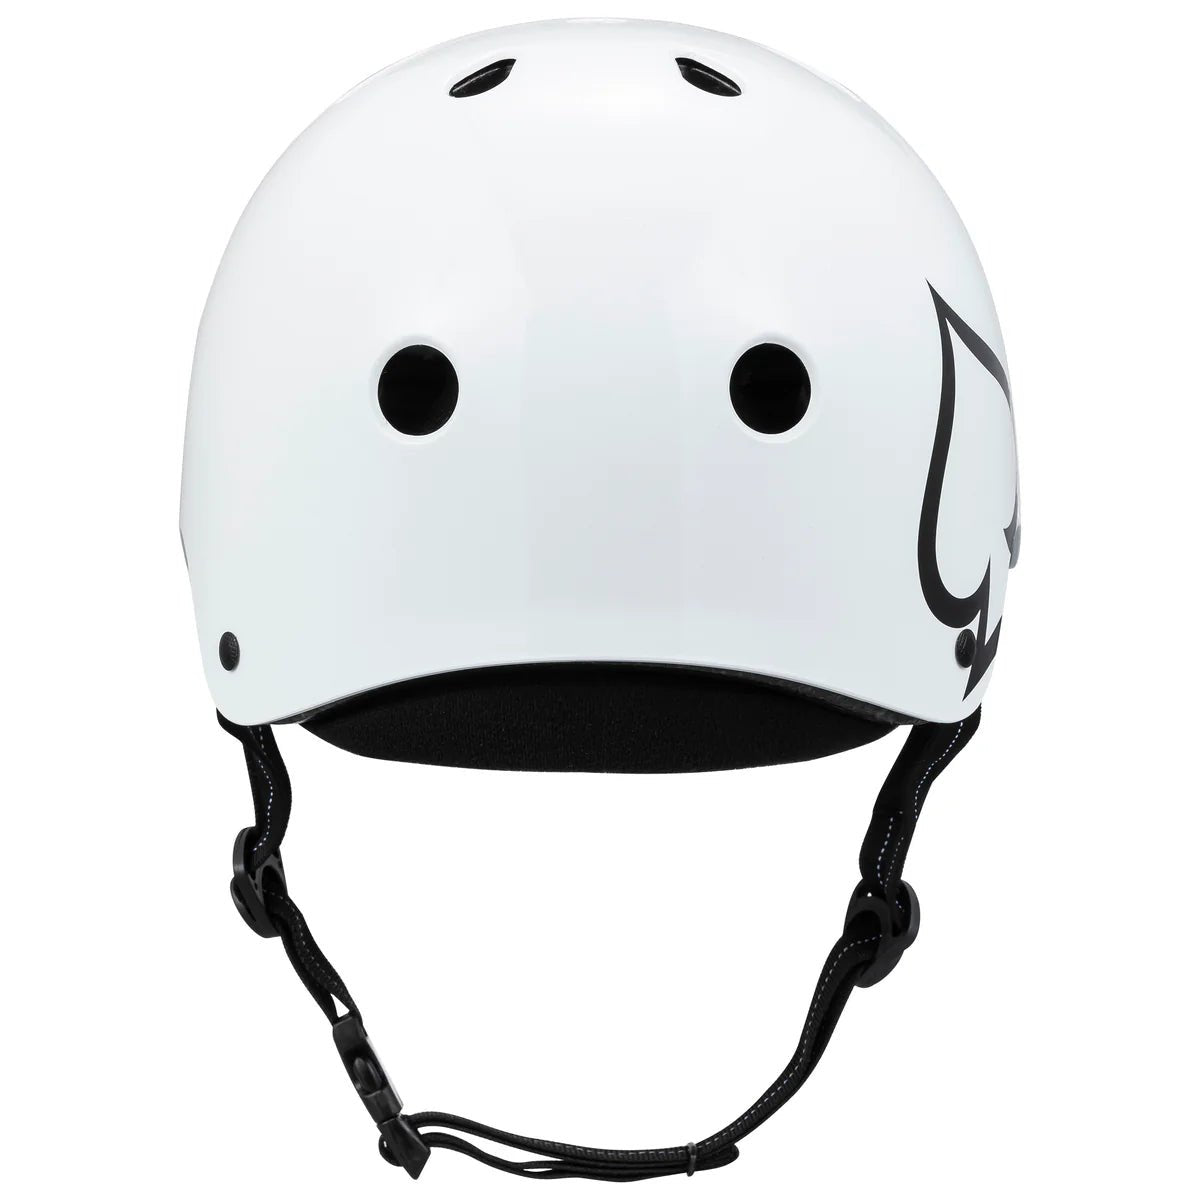 Pro - Tec Low Pro Gloss White - Gear - Helmets